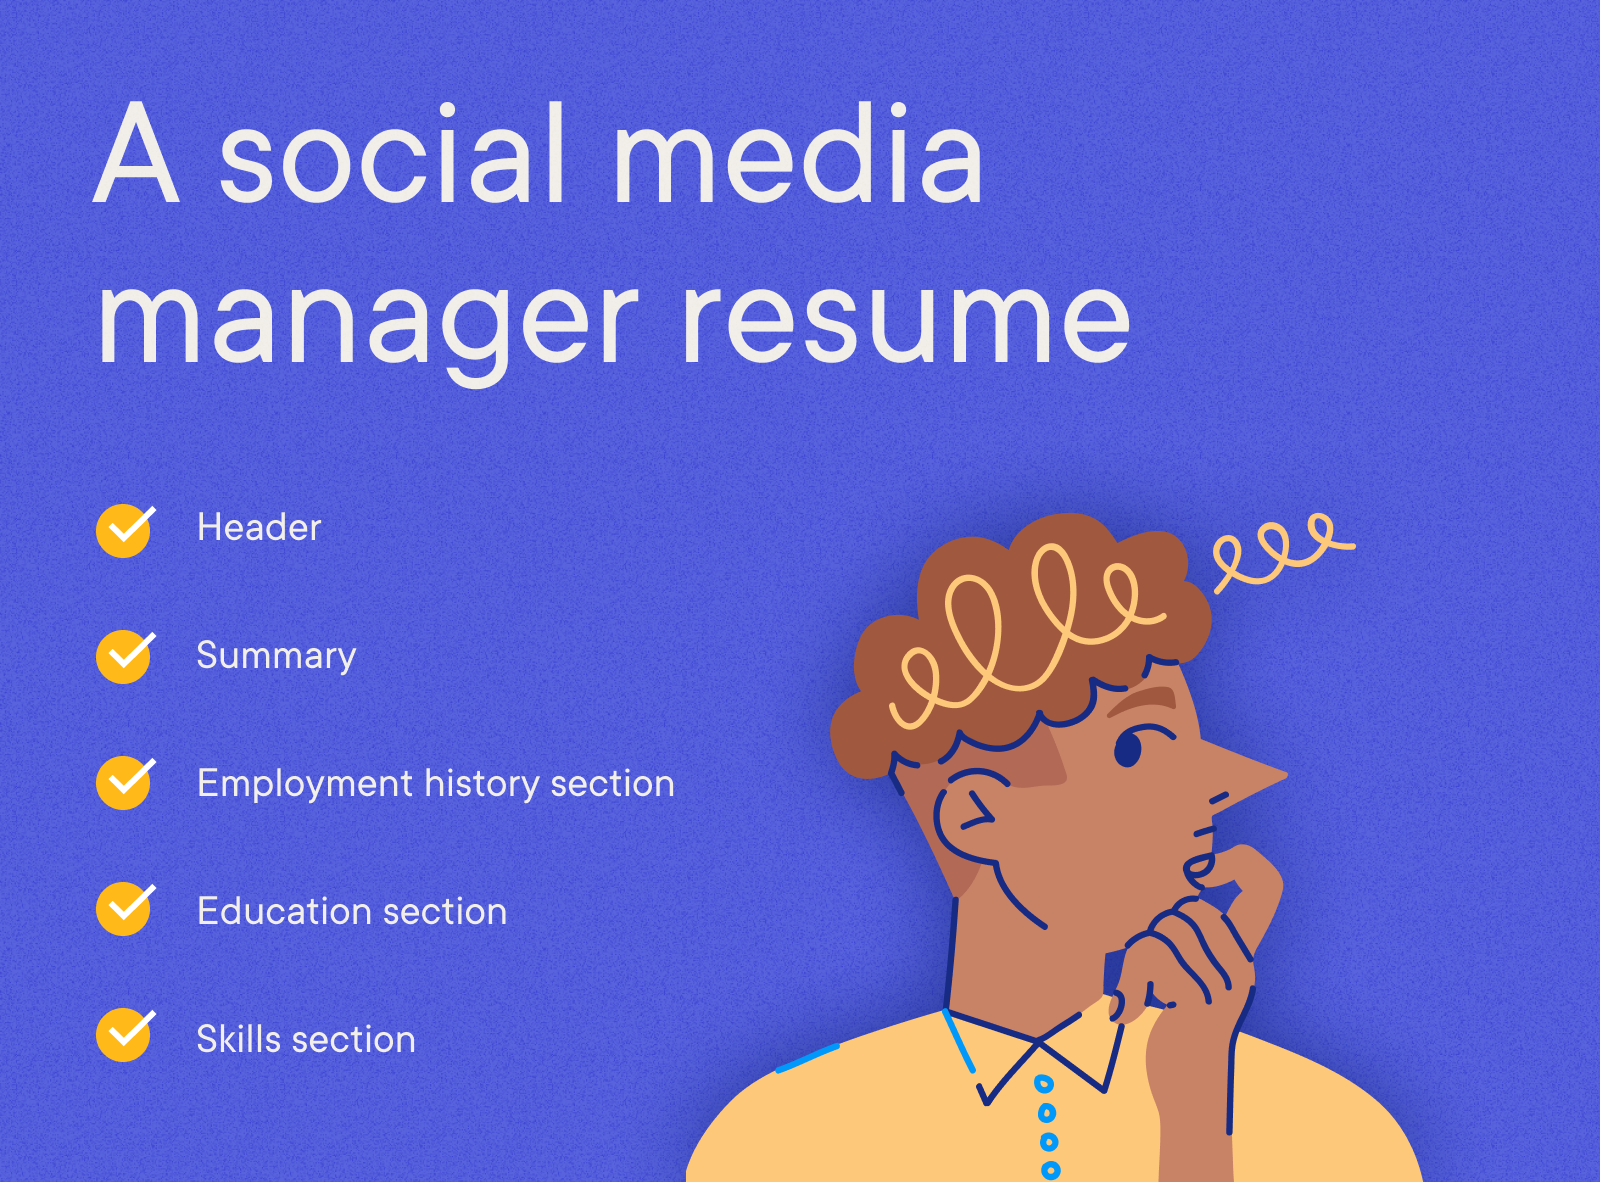 Social Media Manager - A social media manager resume